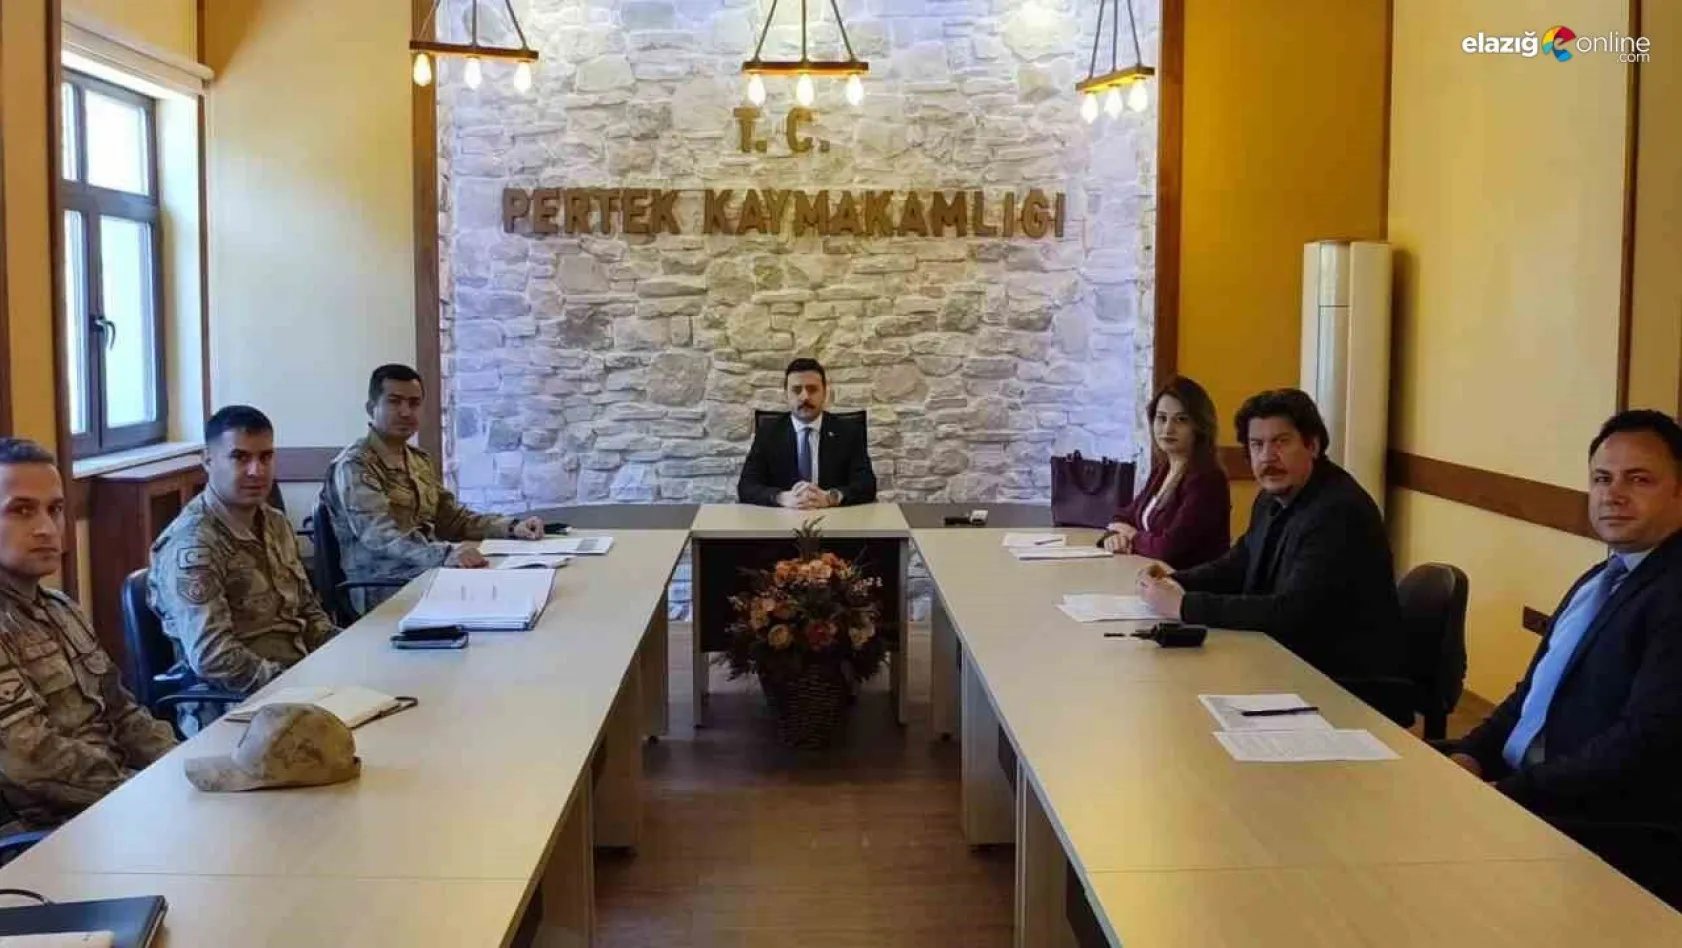 Pertek'te seçim güvenliği toplantısı yapıldı